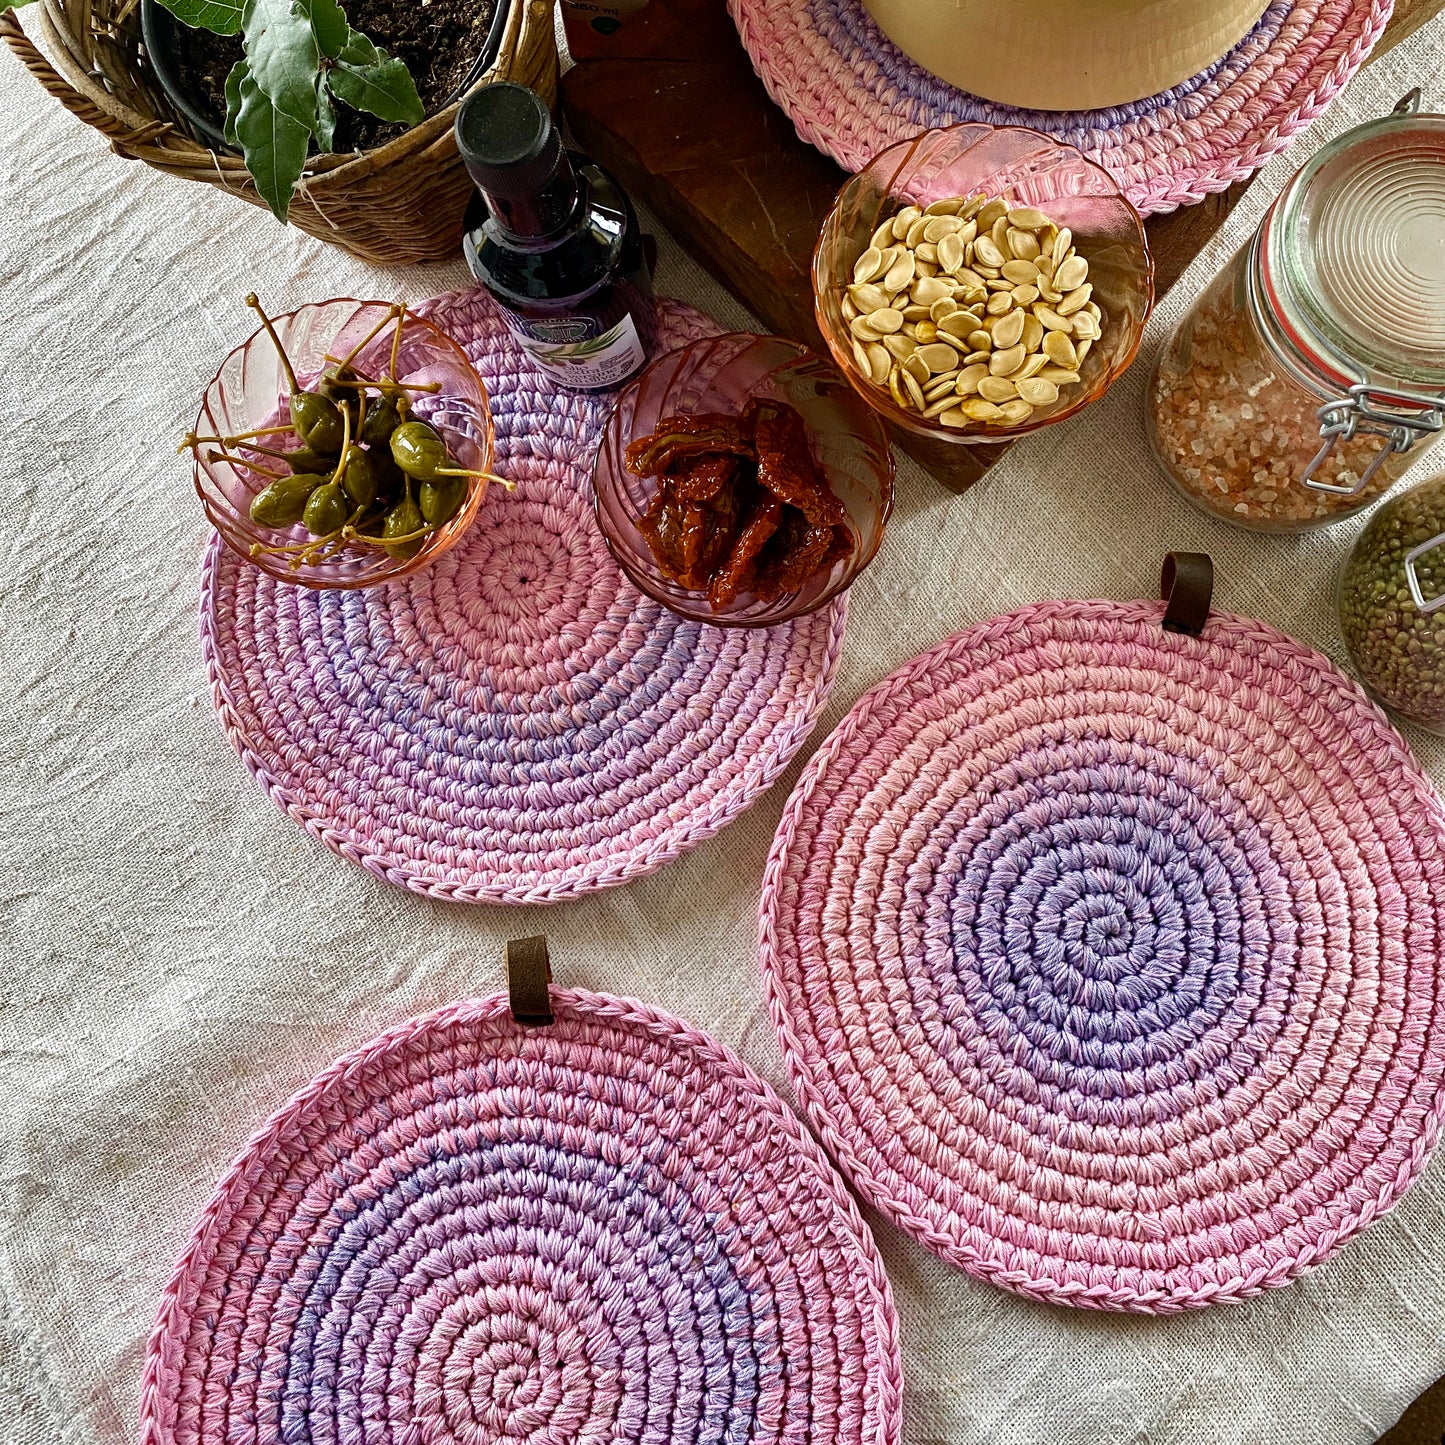 Round Lavender Crochet Place Mats - Cottage Decor Kitchen Set of 4